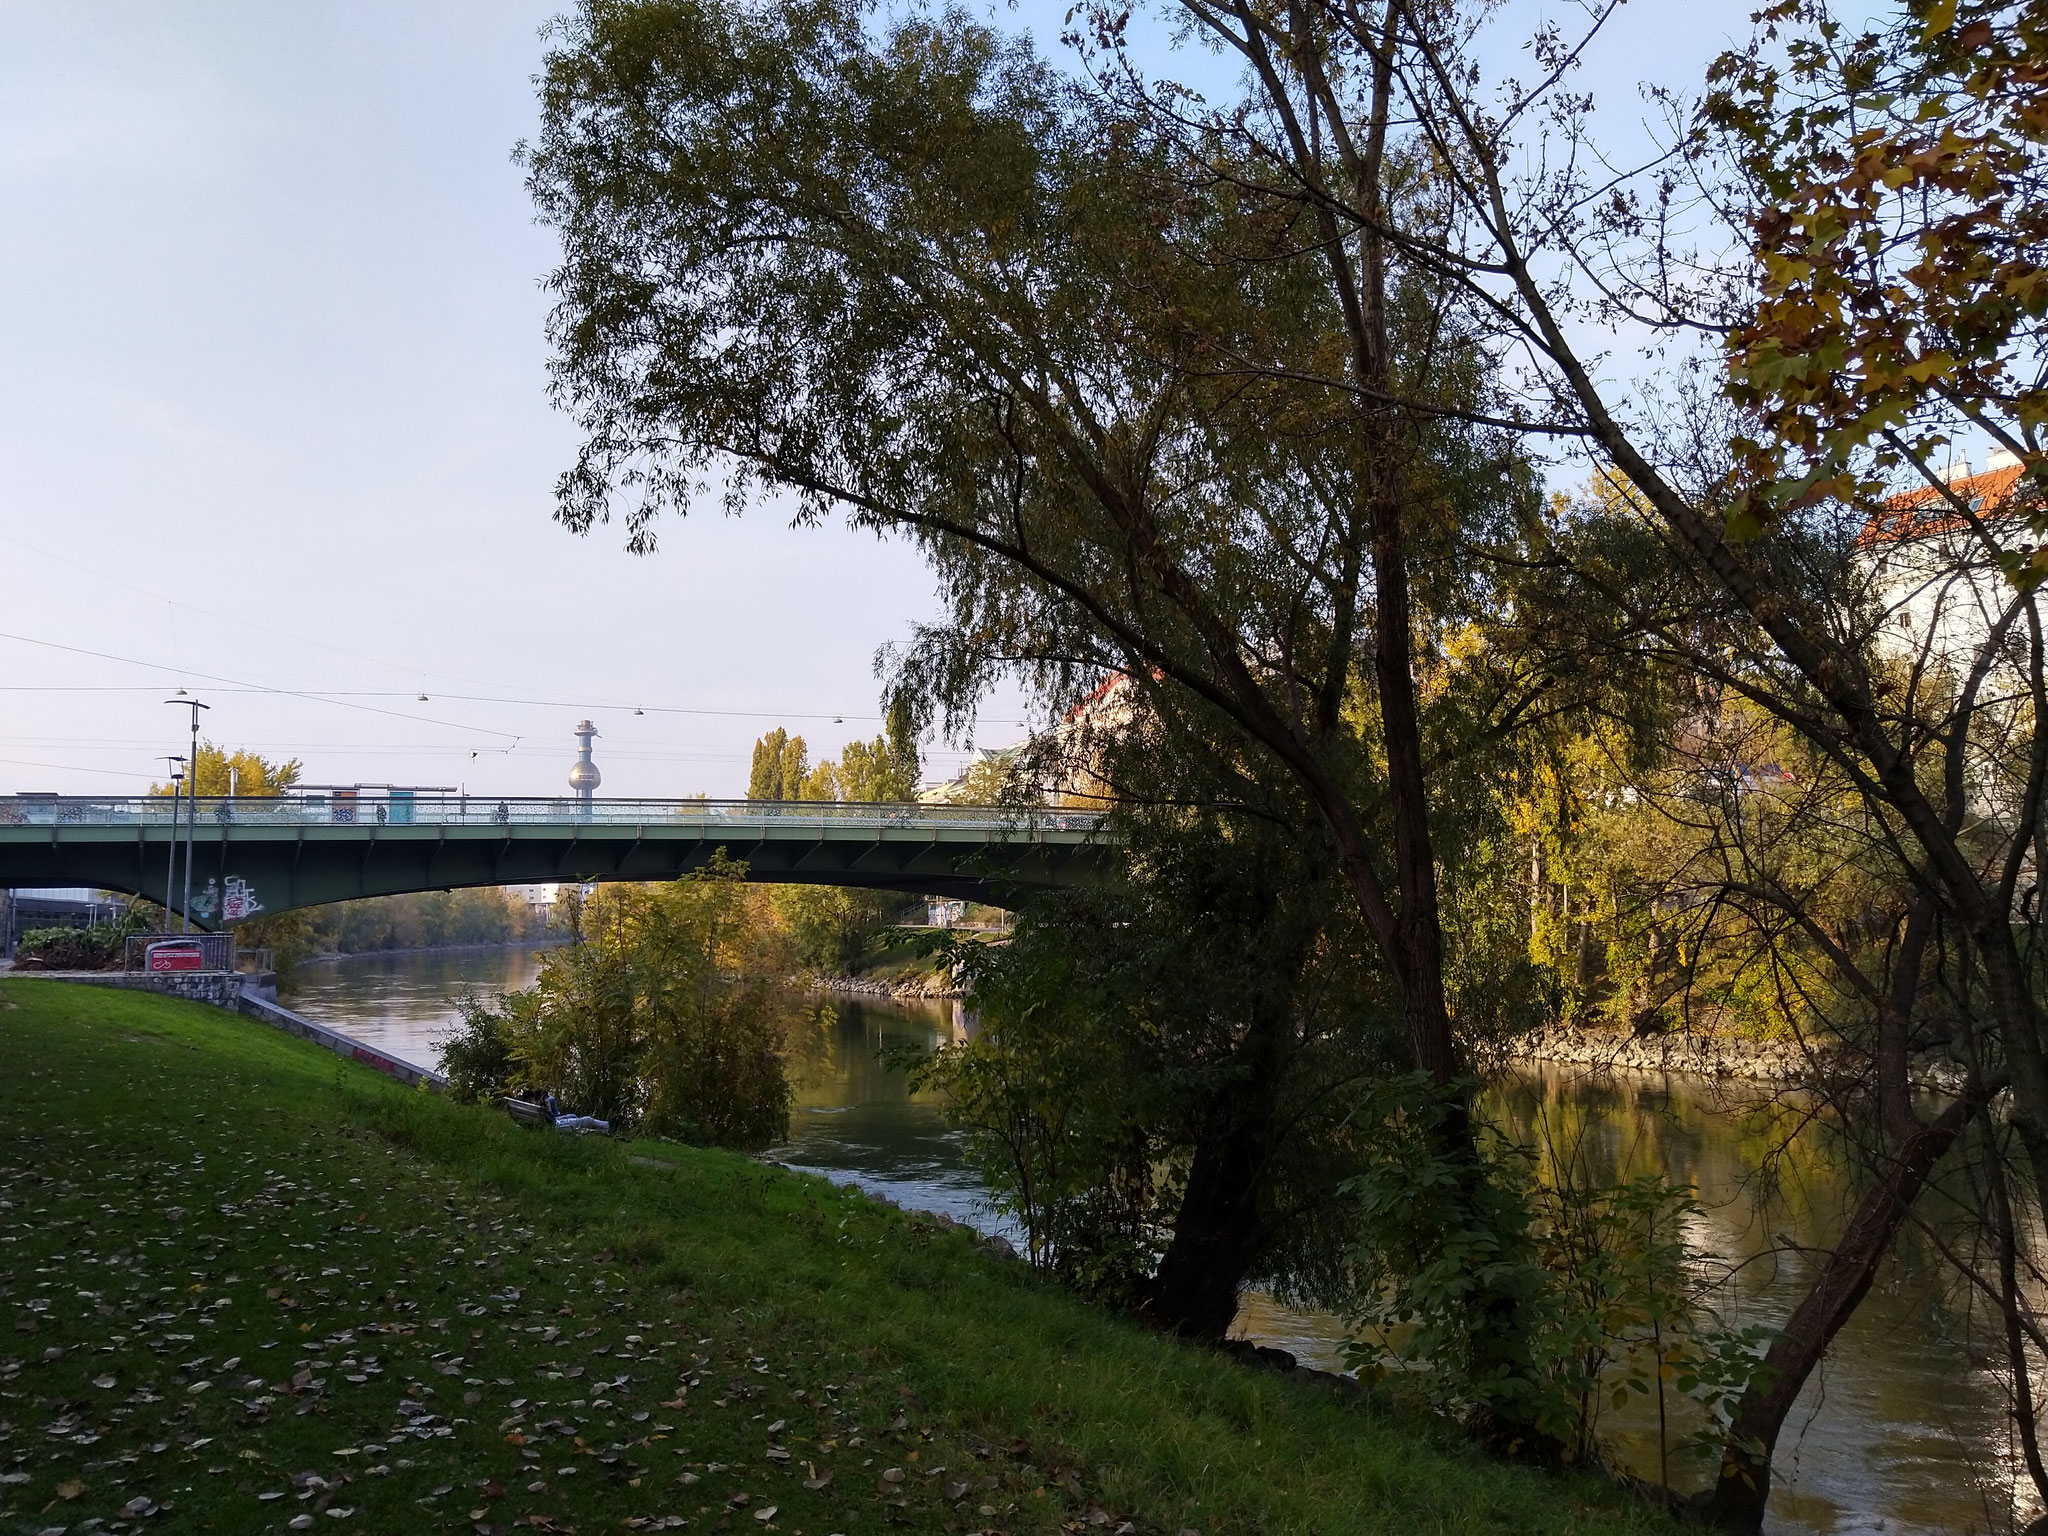 Giro Donaukanal in bici 